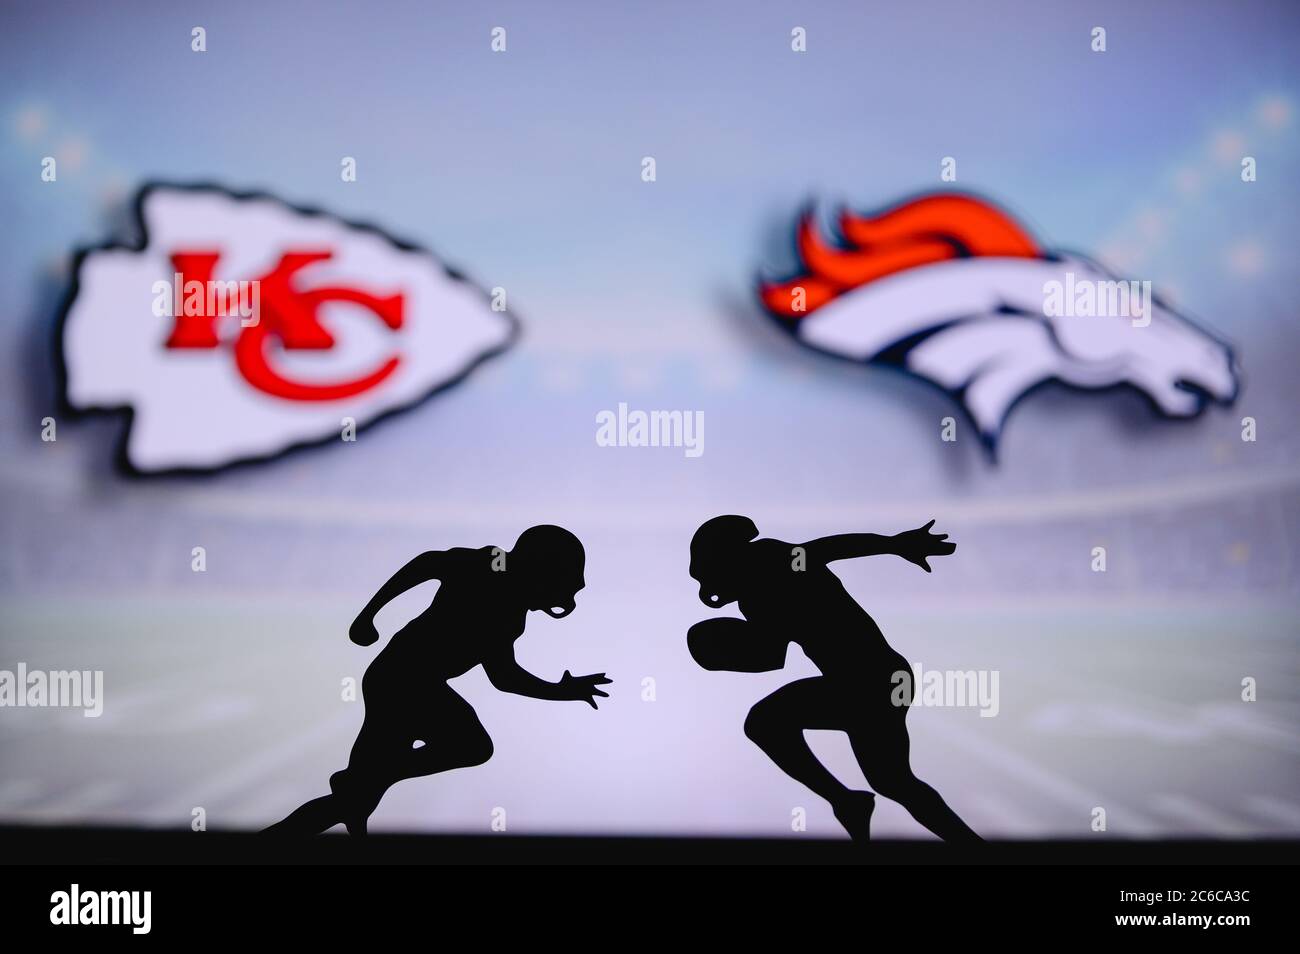 Kansas City Chiefs gegen Denver Broncos. NFL Match Poster. Zwei amerikanische Fußballspieler Silhouette gegenüberliegende einander auf dem Feld. Clubs Logo in hintergr Stockfoto